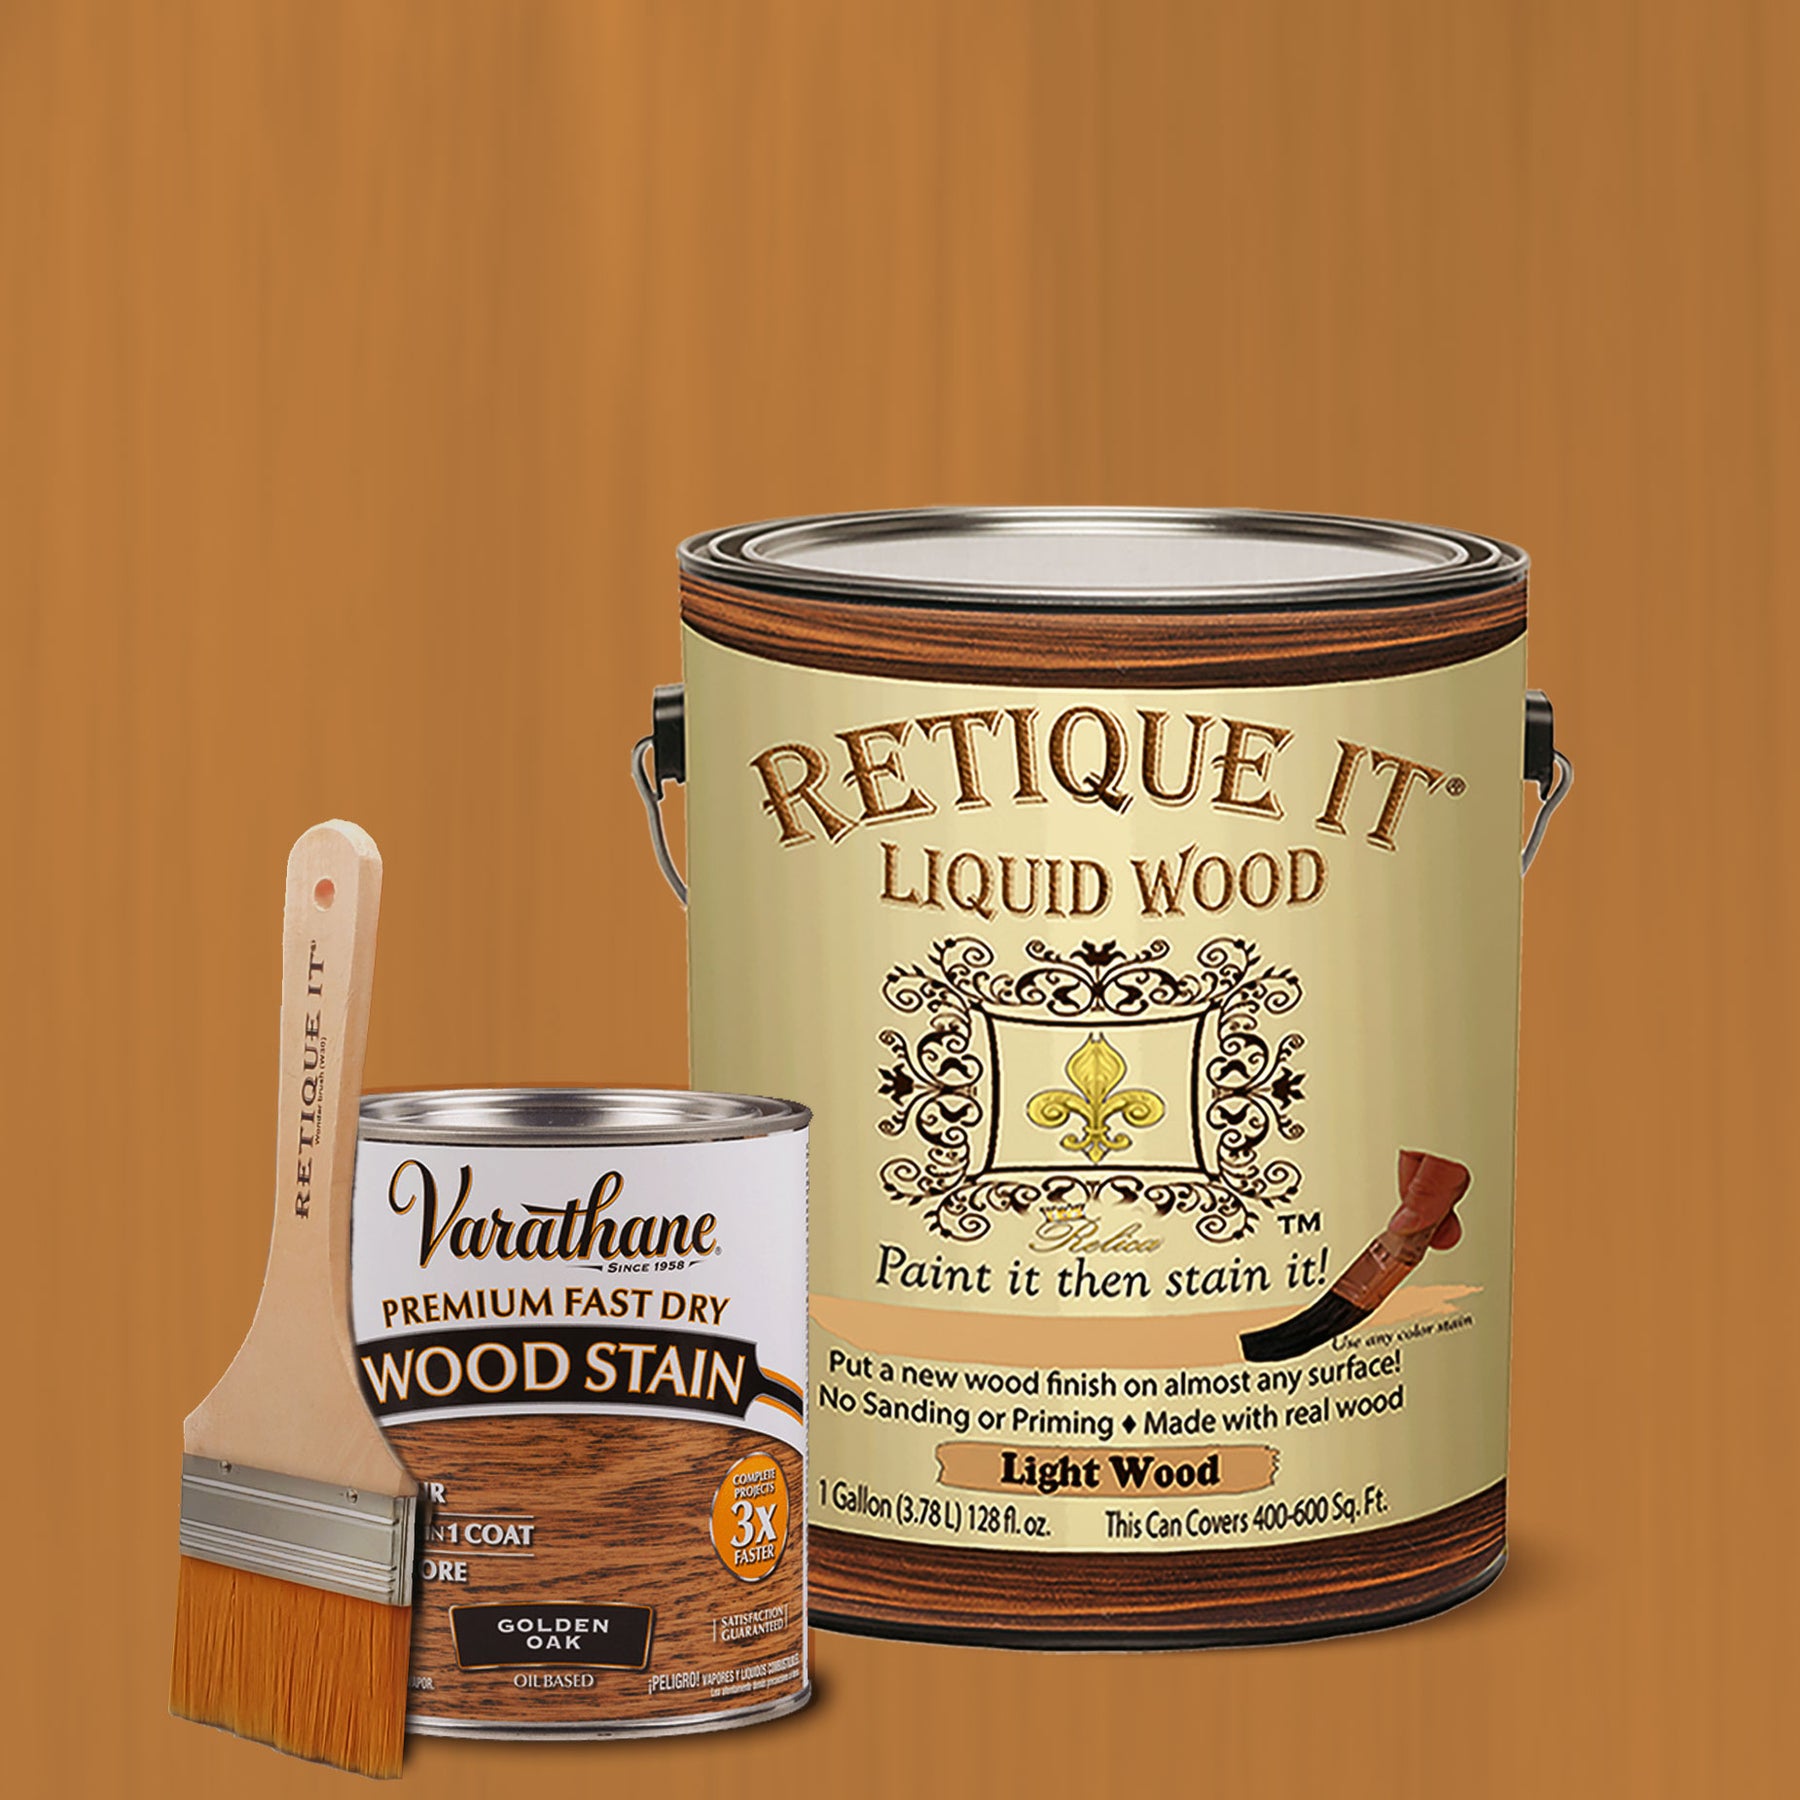 Retique It Liquid Wood, 8oz, 1. Light, Men's, Size: 8 fl oz, Other